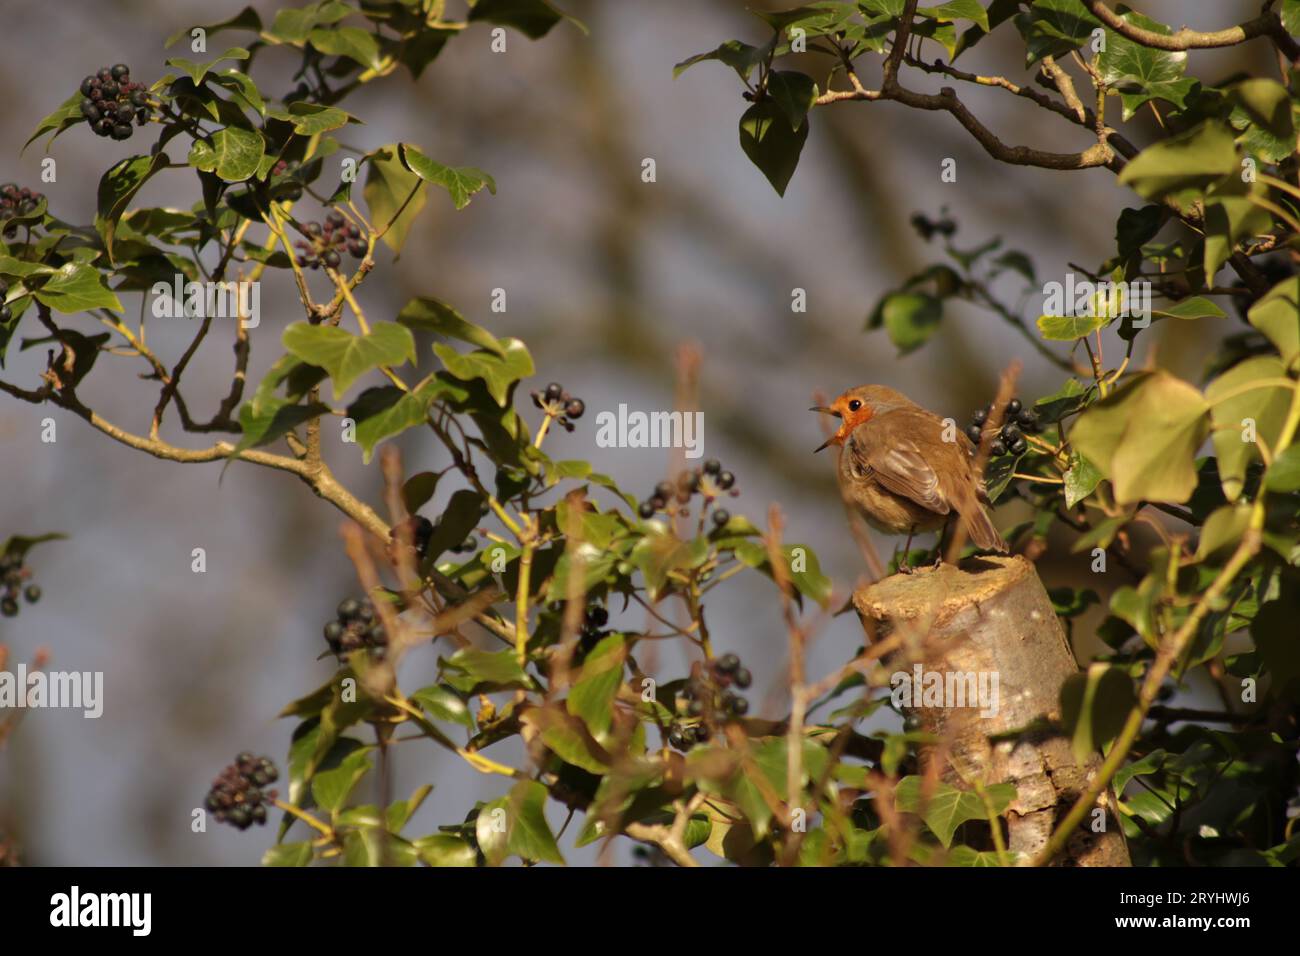 Ein sehr niedlicher Rotkehlchen-Vogel, der mit seinem offenen Schnabel singt, saß auf einem gesägten Baumstamm, umgeben von grünem Efeu und dunklen Beeren in der Sonne. Stockfoto